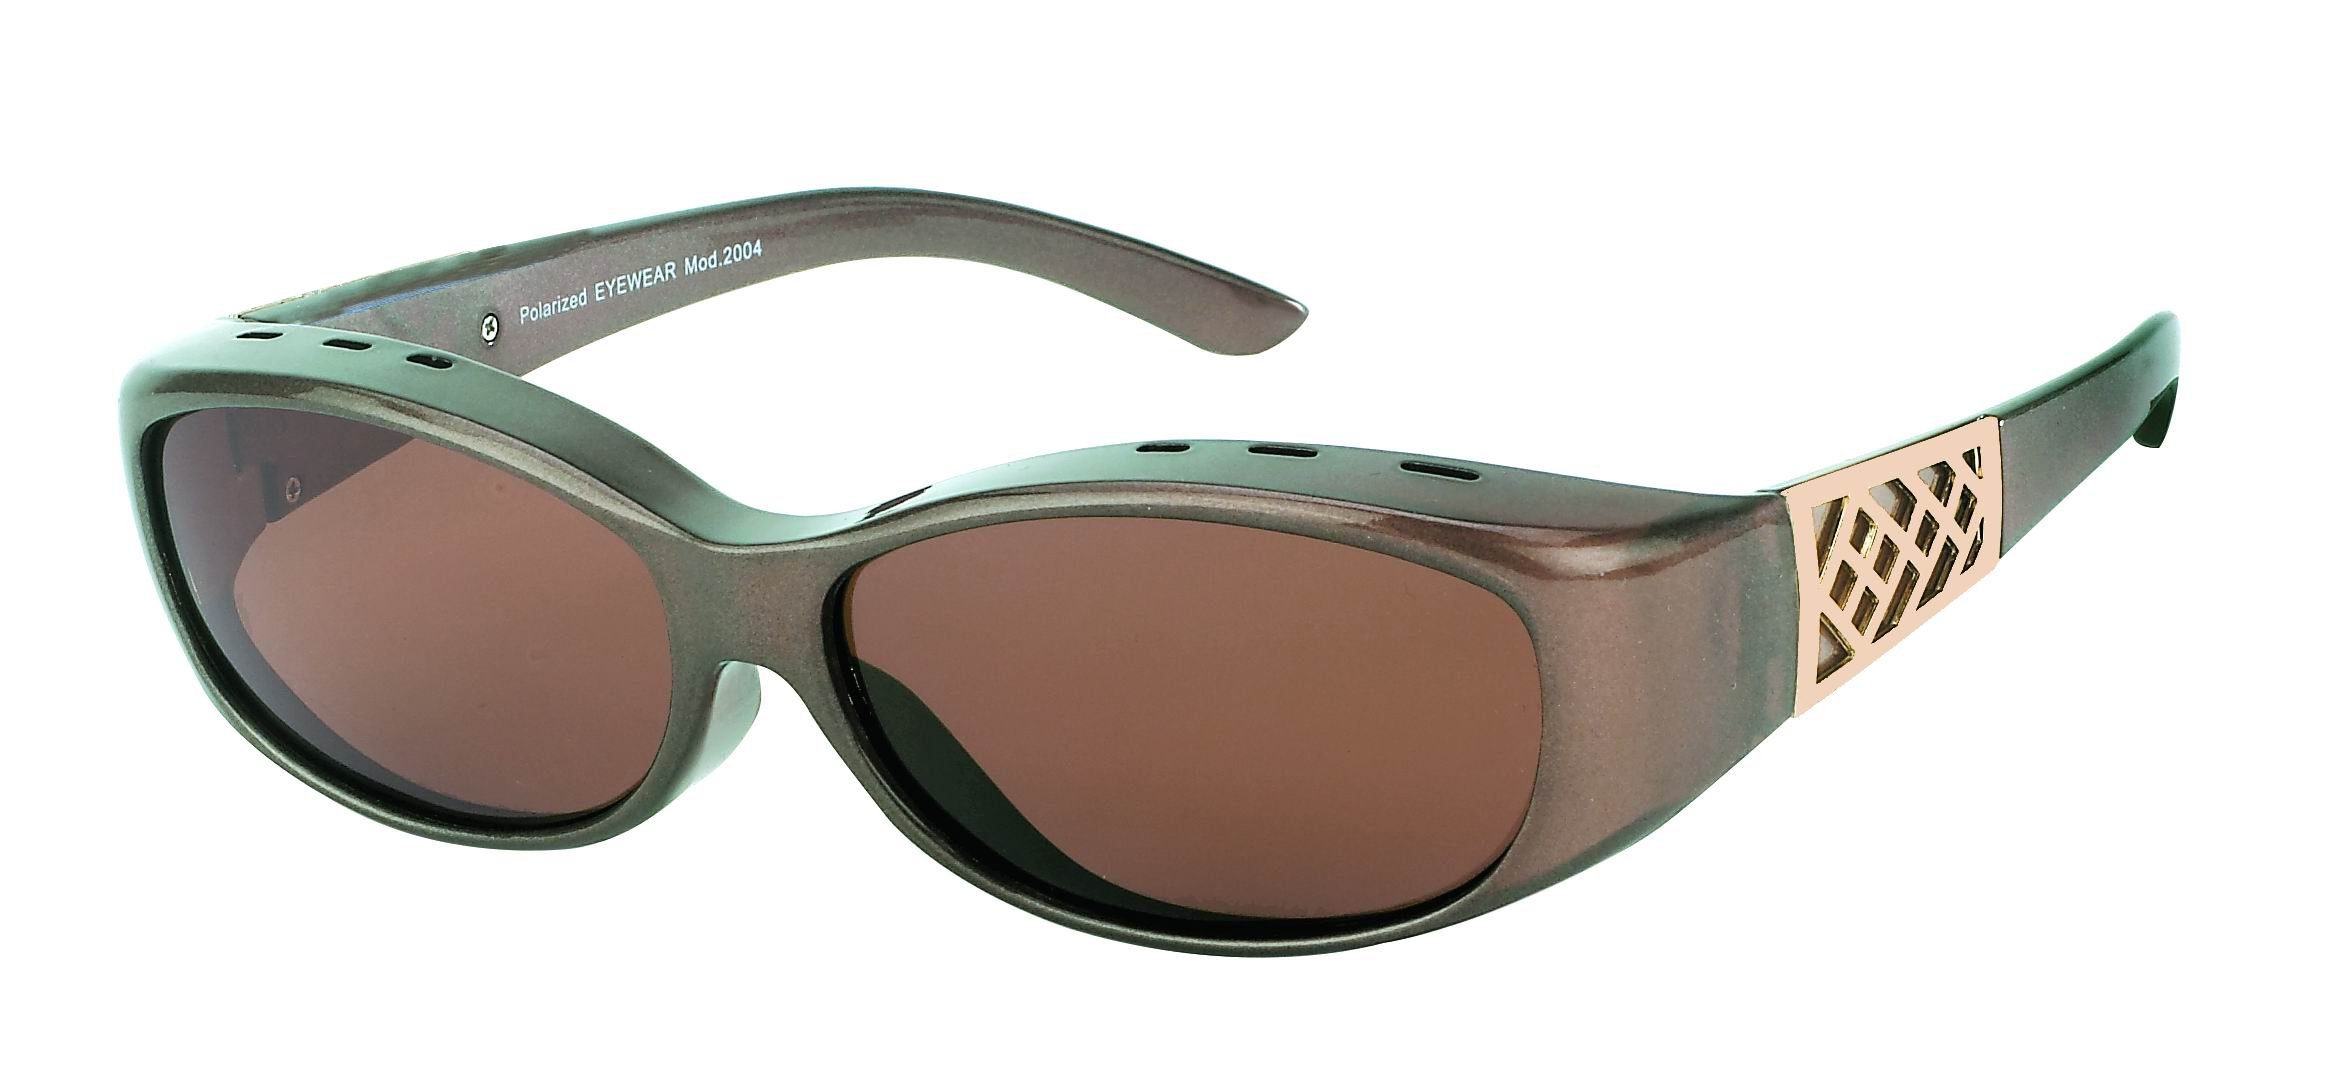 DanCarol Sonnenbrille DC-POL-2004-Überbrille,MIT Polarisierte Gläser Brillengläsern besonderen Schutz vor Licht- und Blendeffekten